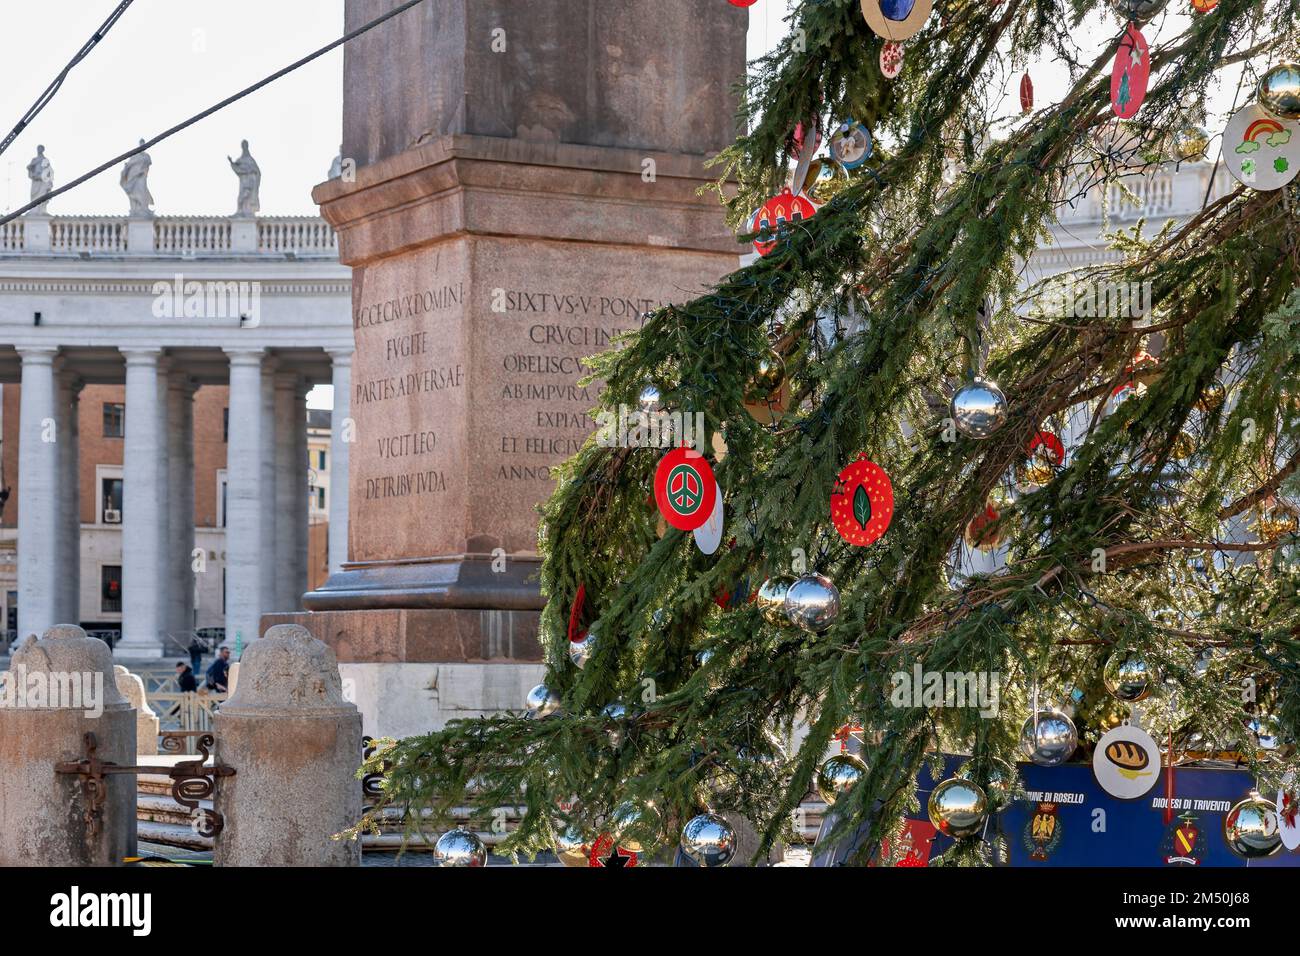 Weihnachtsbaum in St. Petersplatz, Vatikanstadt. Dekoration mit dem Symbol: Liebe statt Krieg. Gegen den Krieg in der Ukraine. Rom, Italien, EU. 2022 Stockfoto